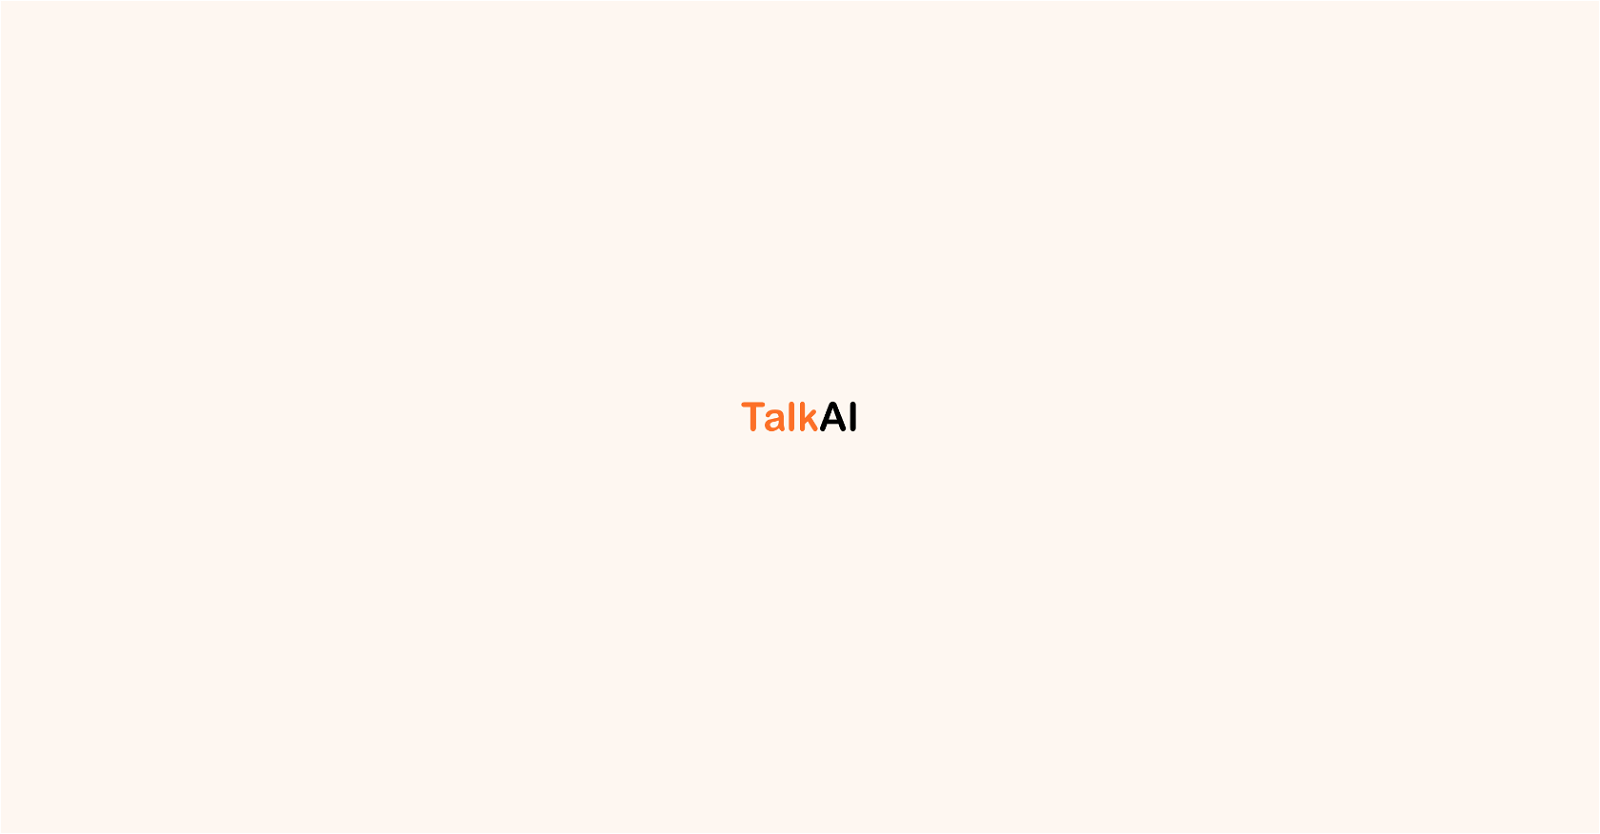 TalkAI